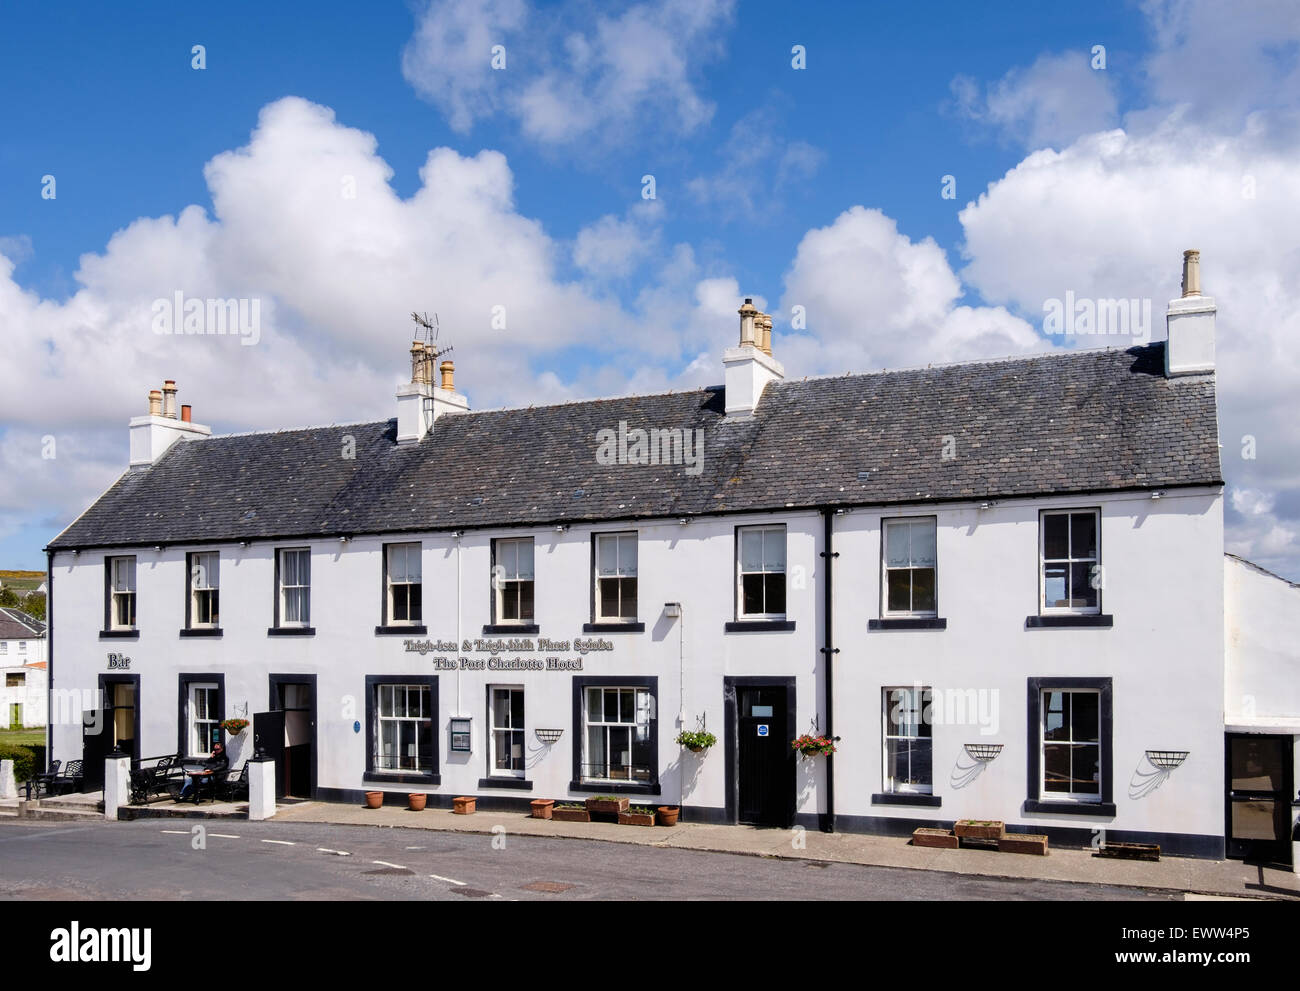 Le Port Charlotte Hotel et bar sur la rue principale Via village de Port Charlotte, l'île d'Islay, Hébrides intérieures, Ecosse, Royaume-Uni Banque D'Images